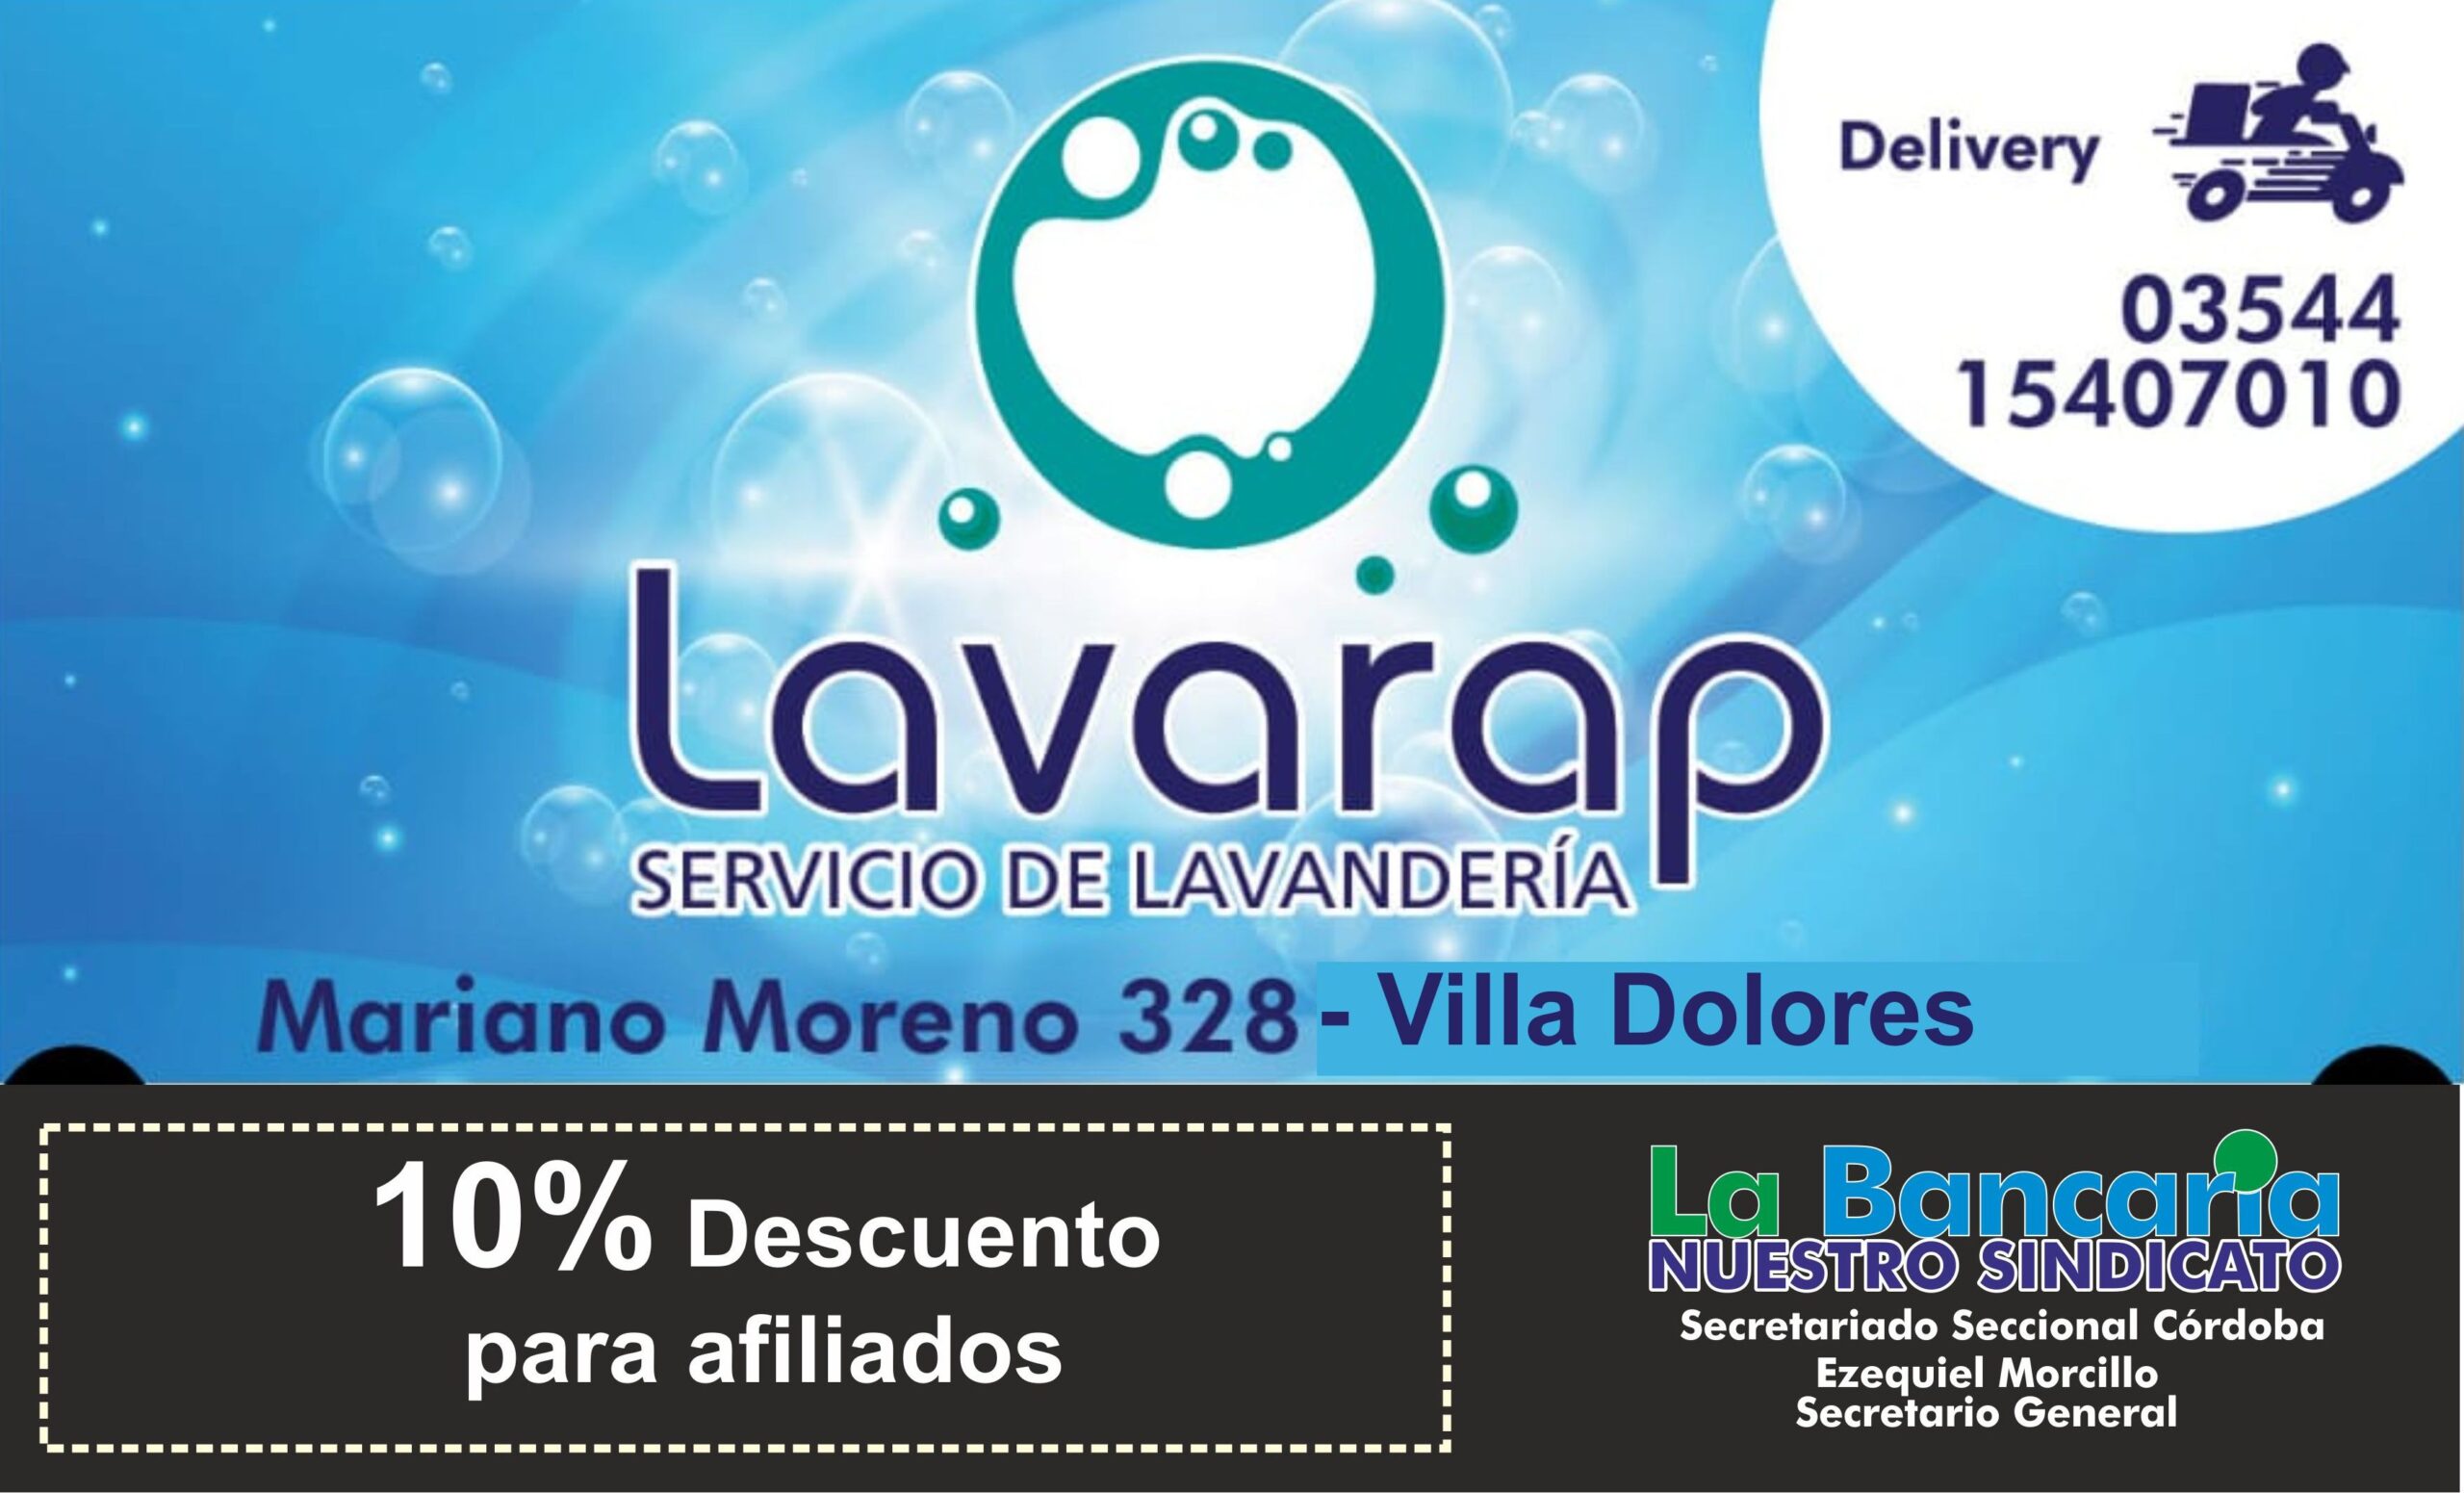 Lavarap (Lavandería) – La Bancaria CBA